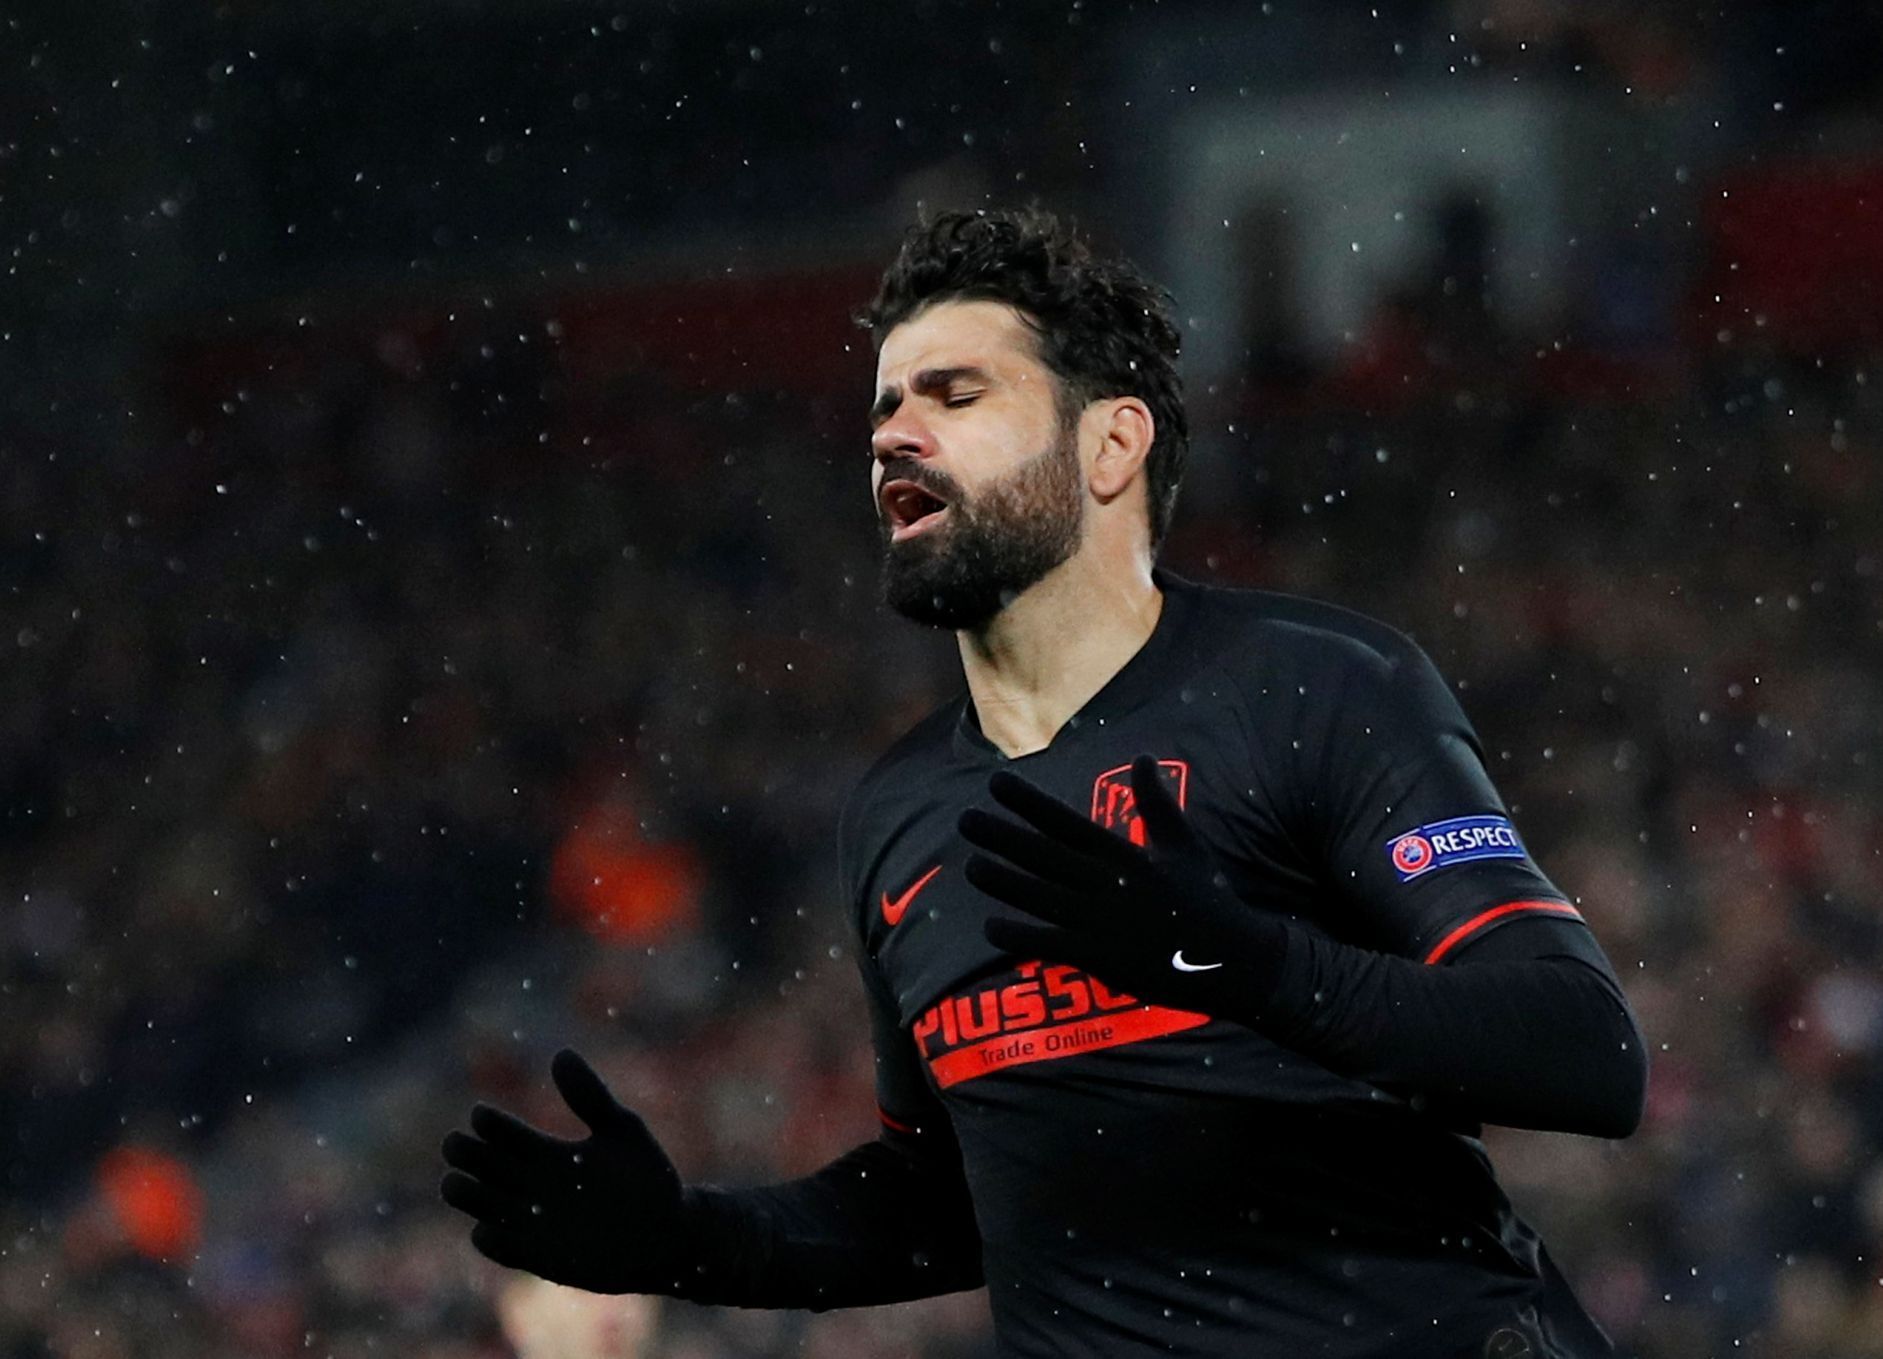 Liverpool vs. Atlético Madrid v osmifinále Ligy mistrů 2020